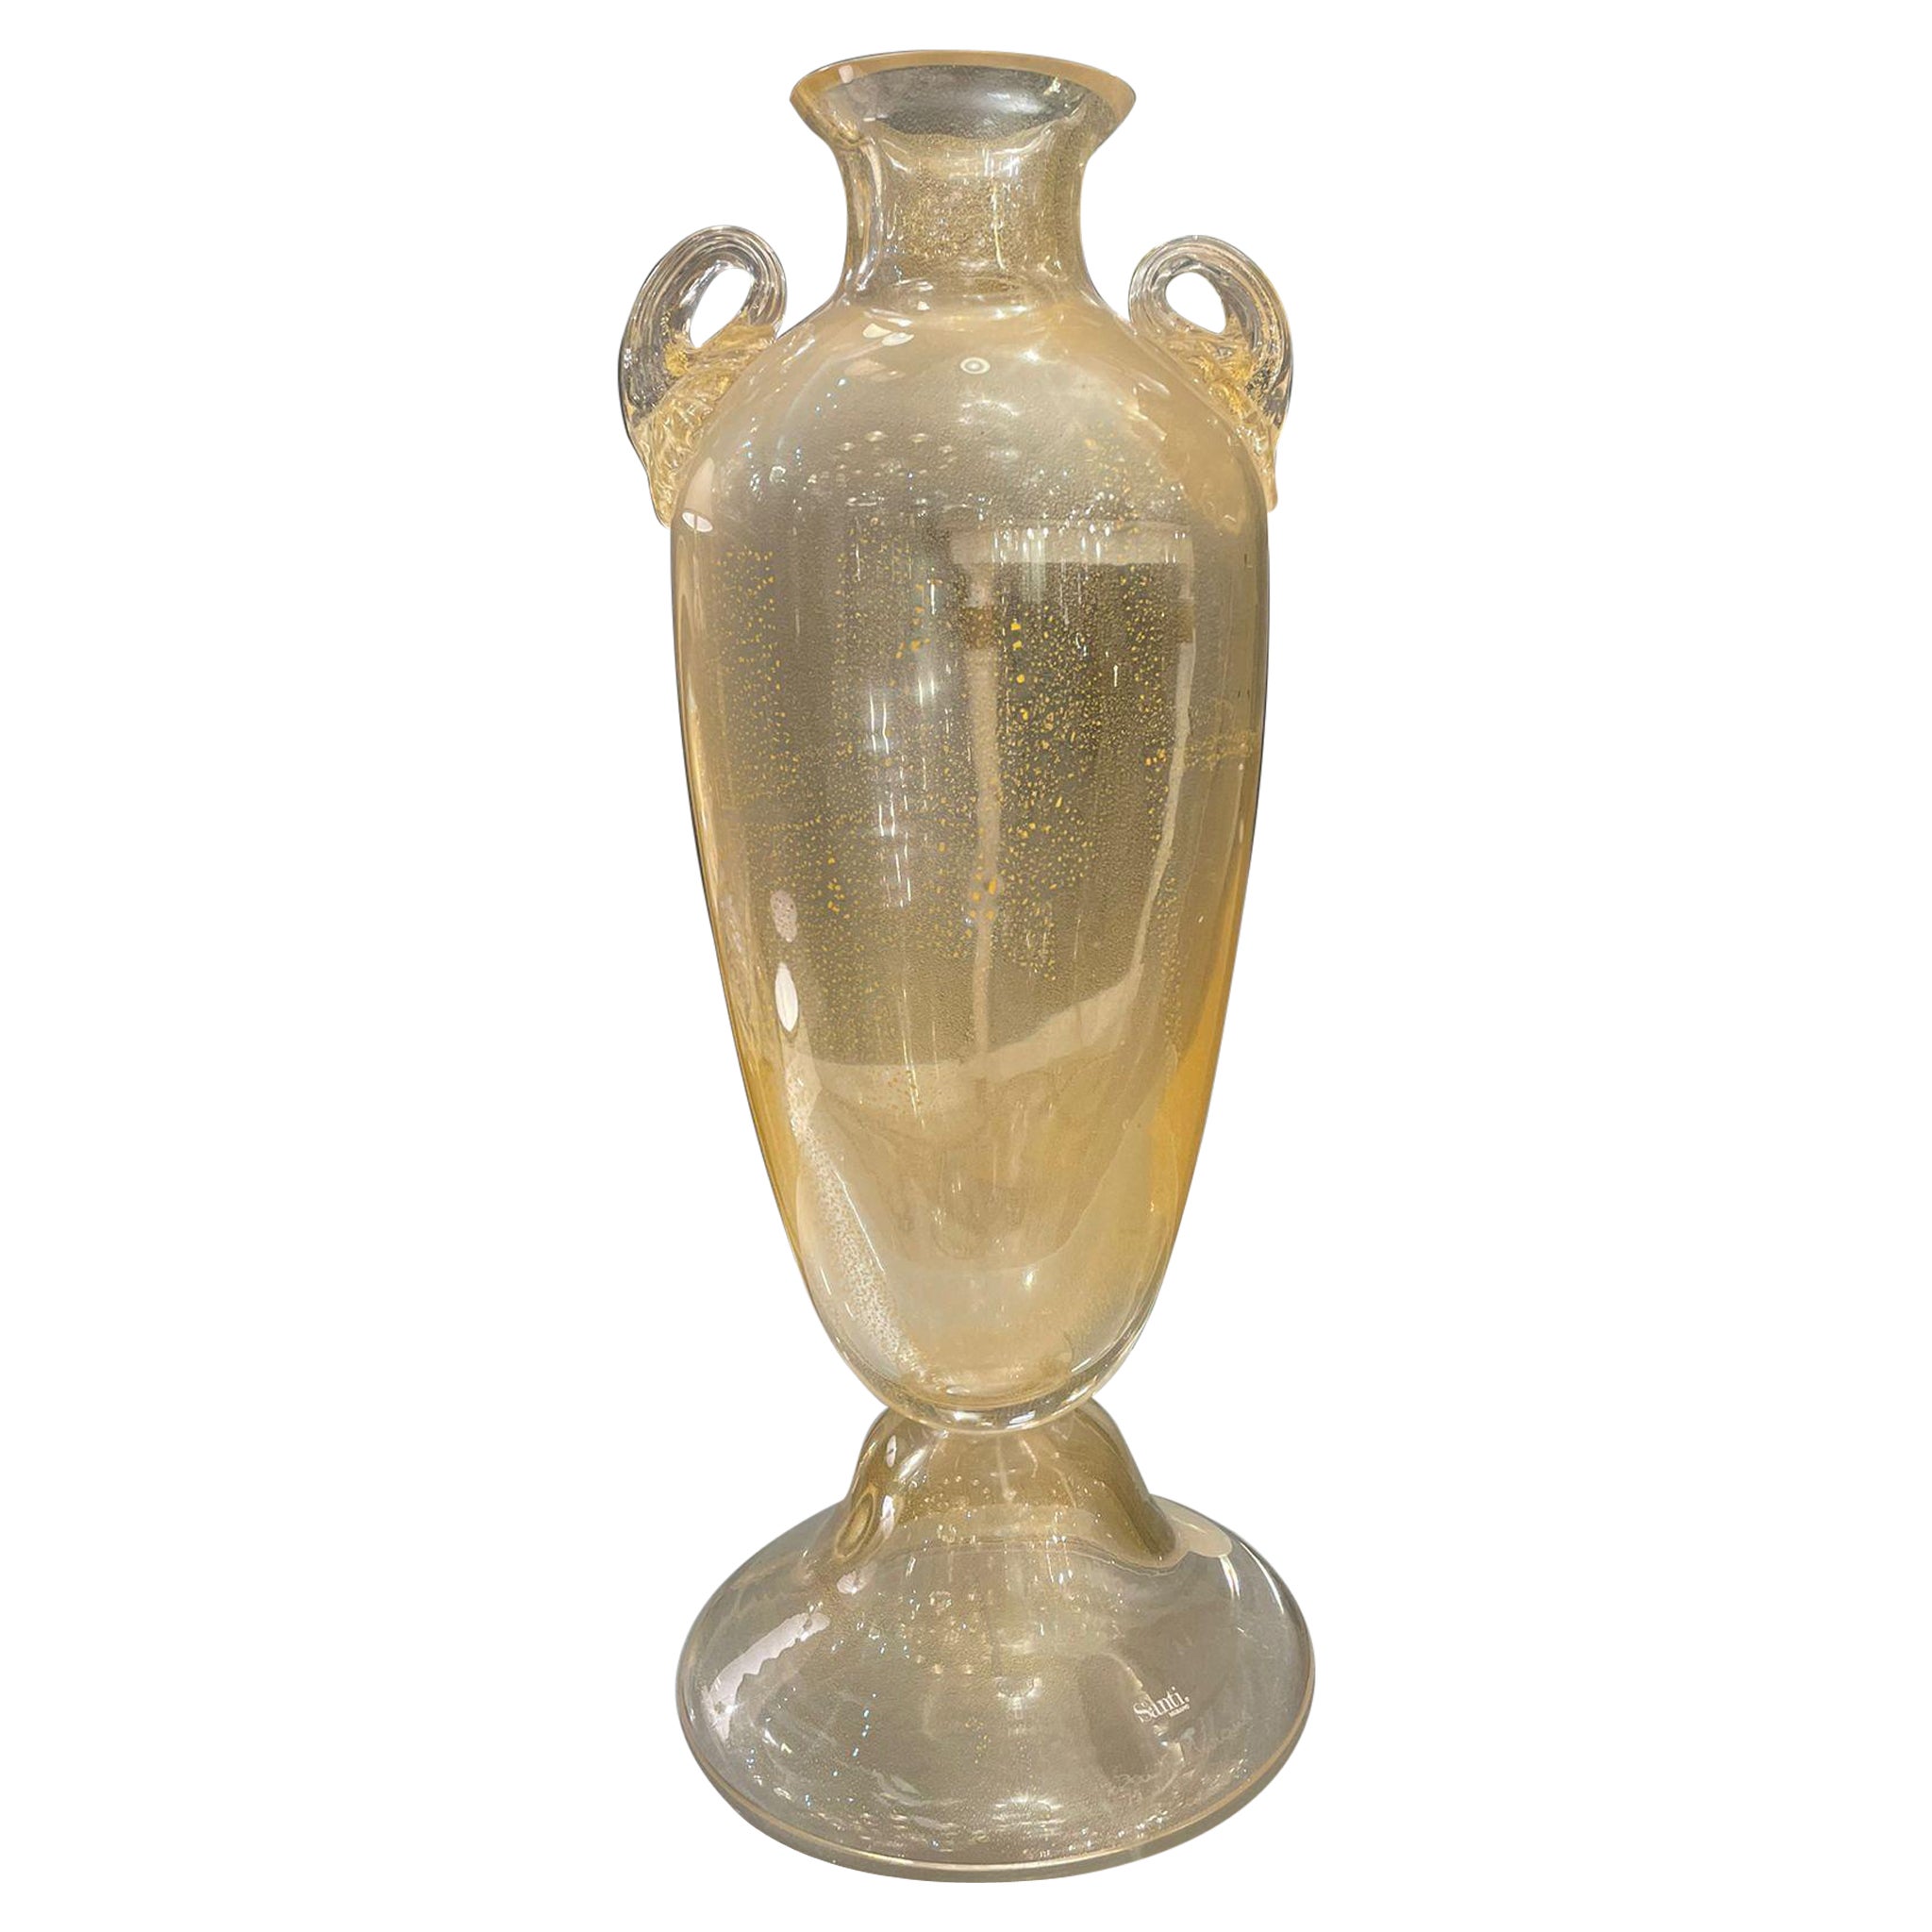 Murano Glass Vase Signed Santi Murano